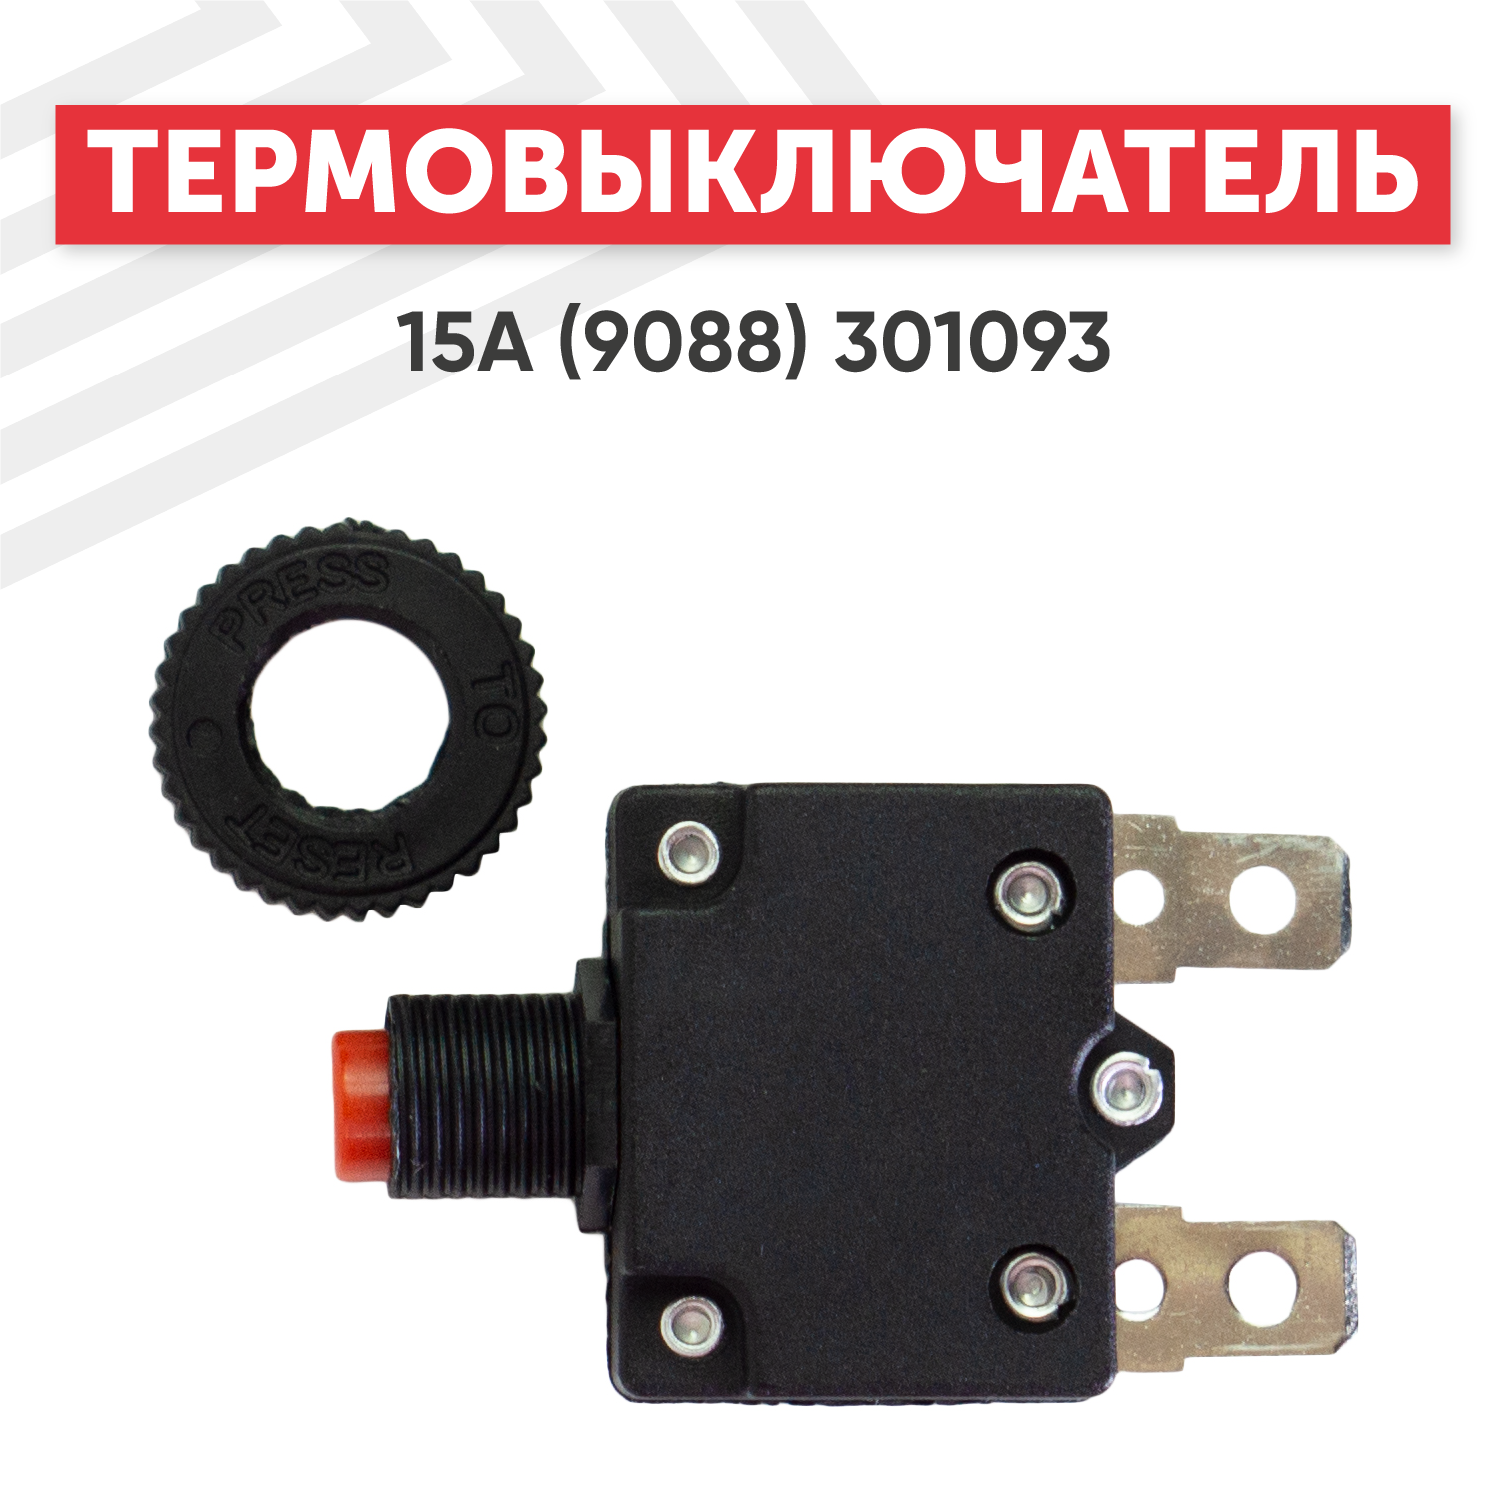 Термовыключатель 15A для электроинструмента (9088) 301093